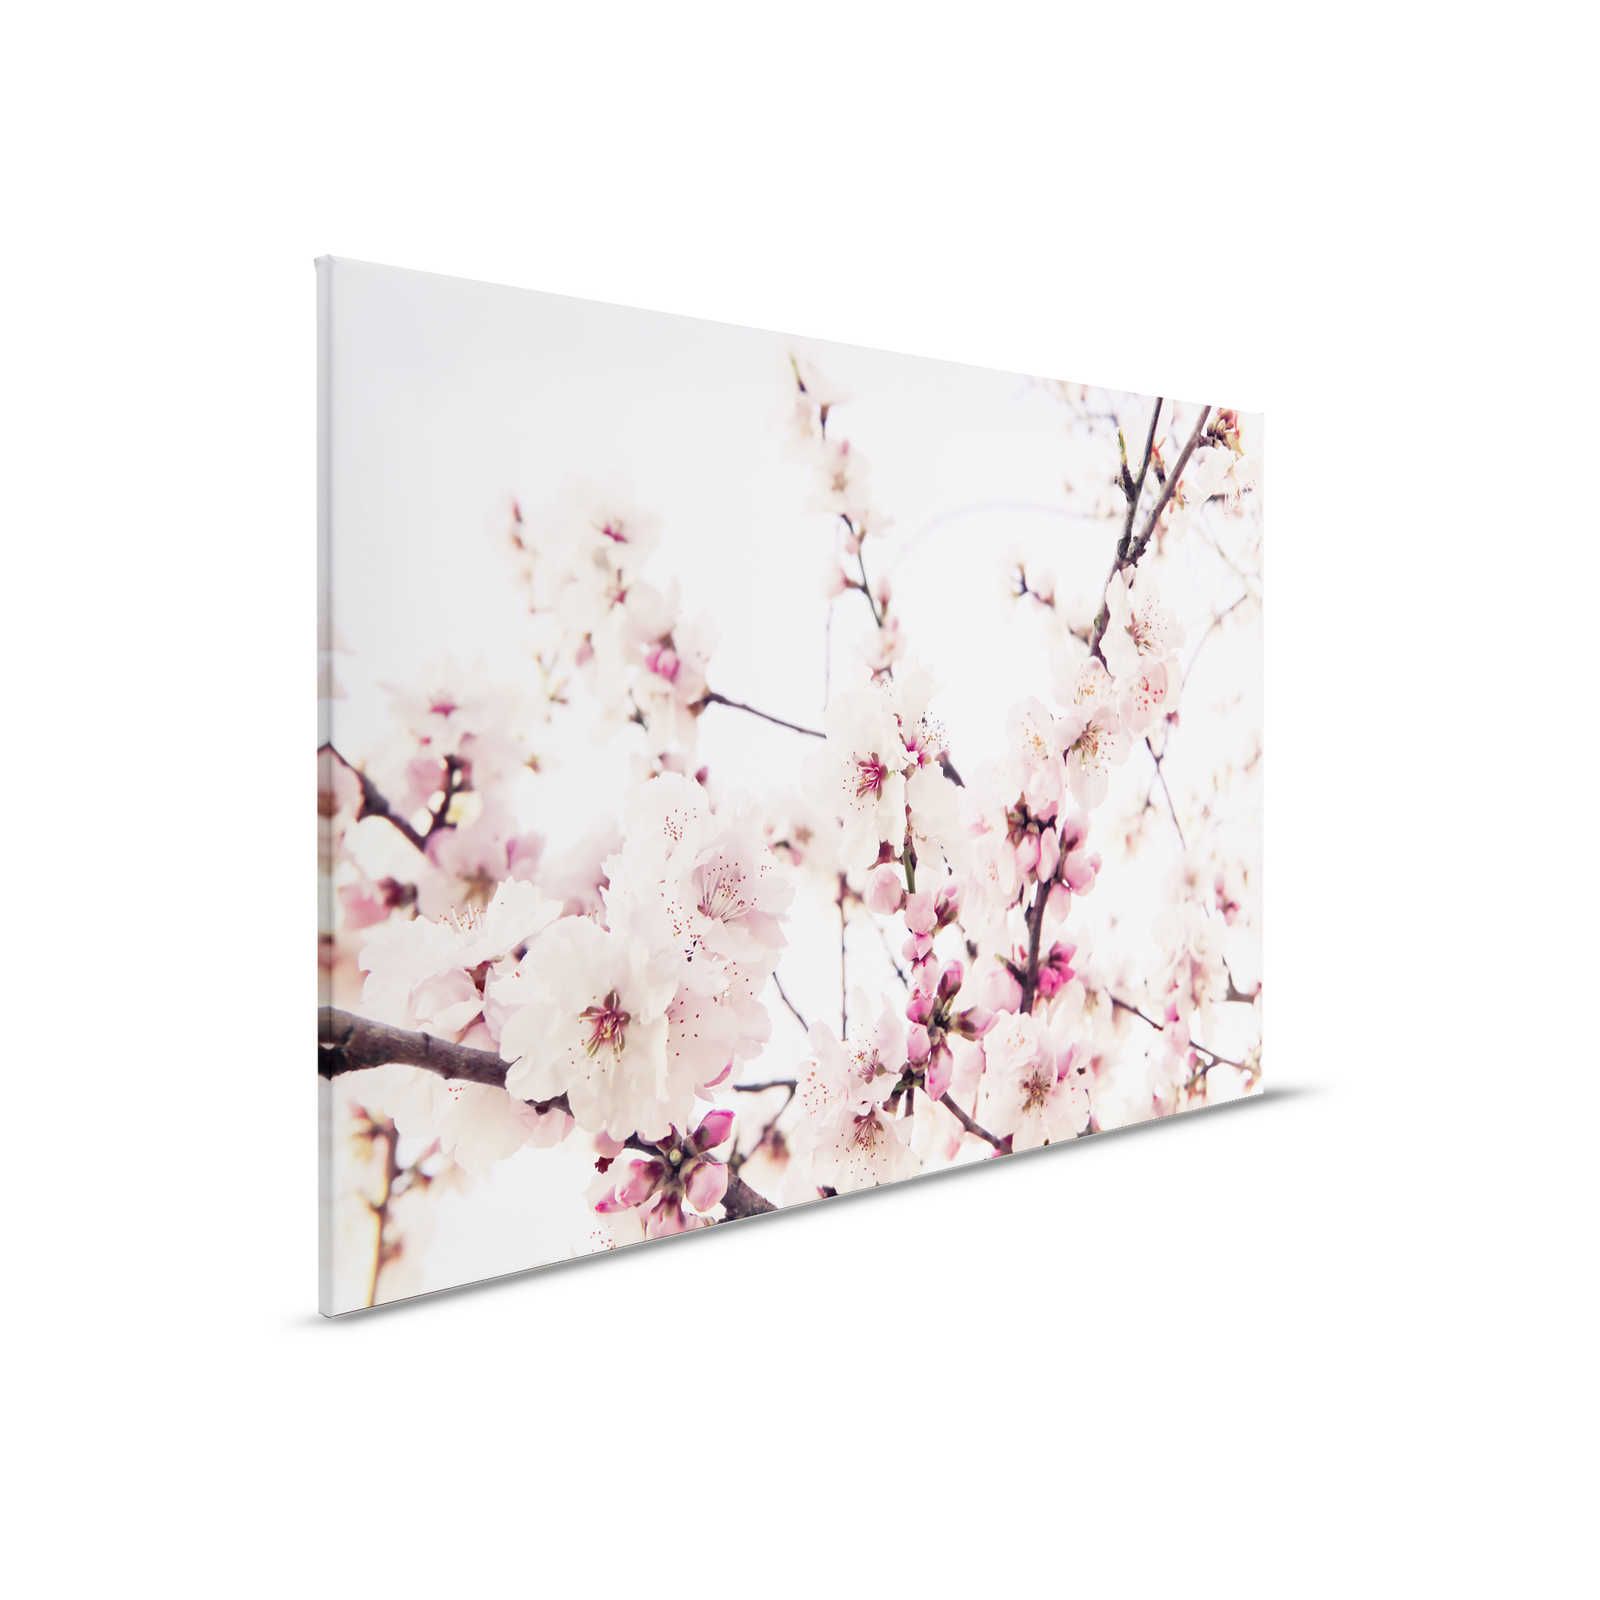 Pittura su tela con fiori di ciliegio - 0,90 m x 0,60 m
